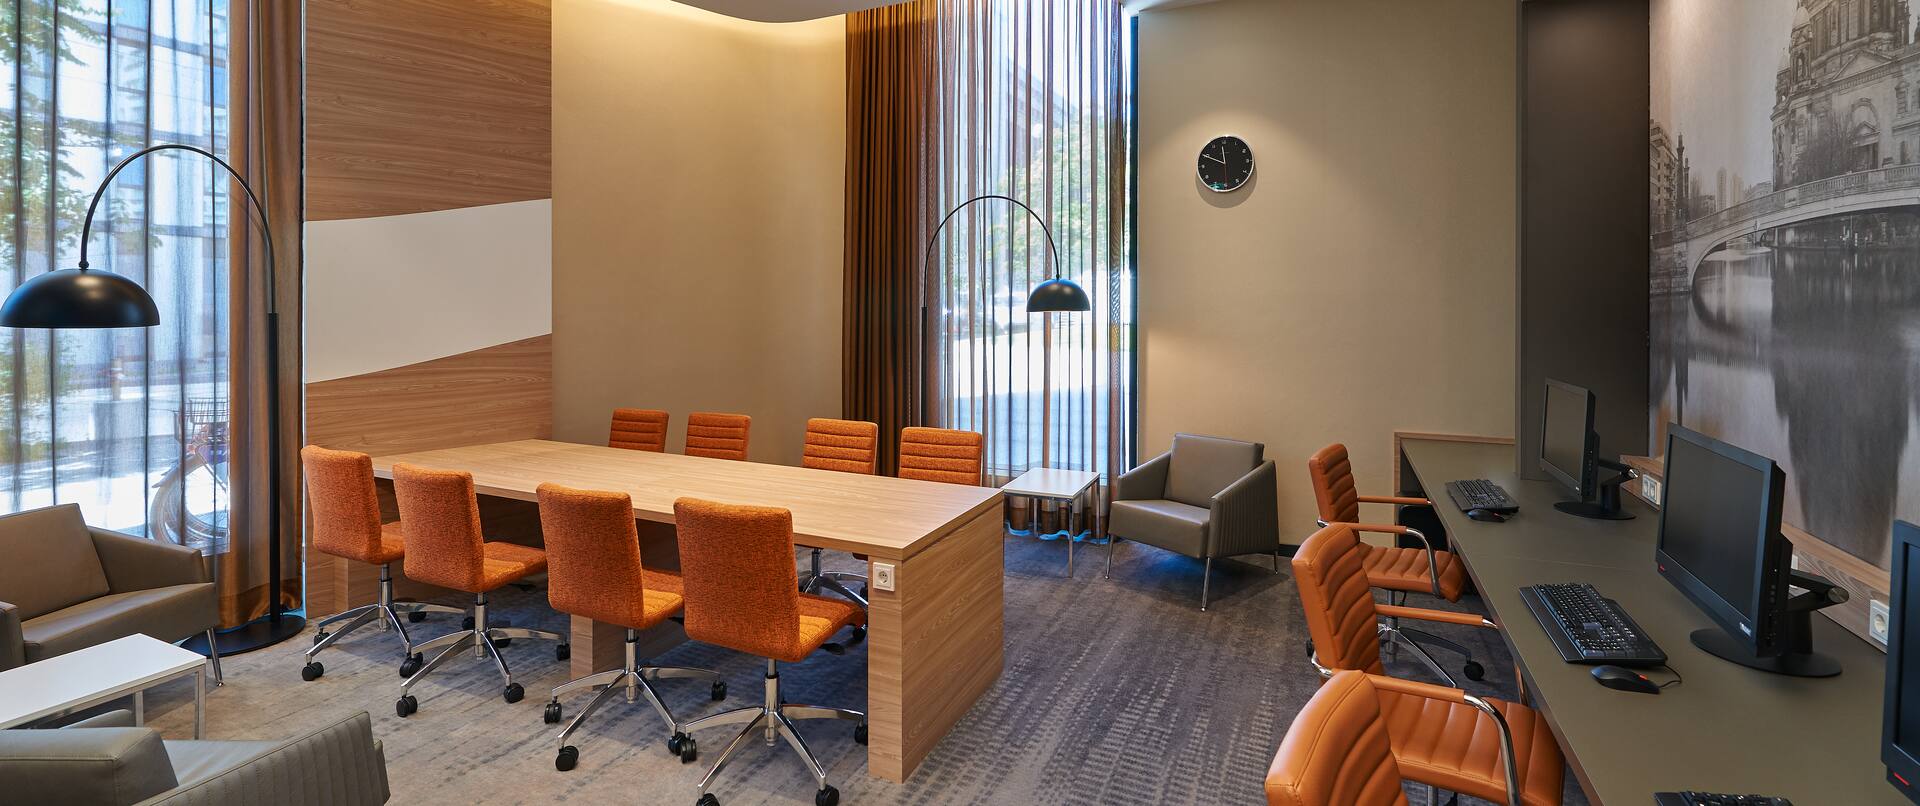 Vier Graue Sessel, zwei Stehlampen, großer Tisch mit acht orangefarbenen Stühlen, Fenster mit bodenlangen Gardinen, Wandgemälde und Schreibtisch mit drei Computern im Arbeitsbereich